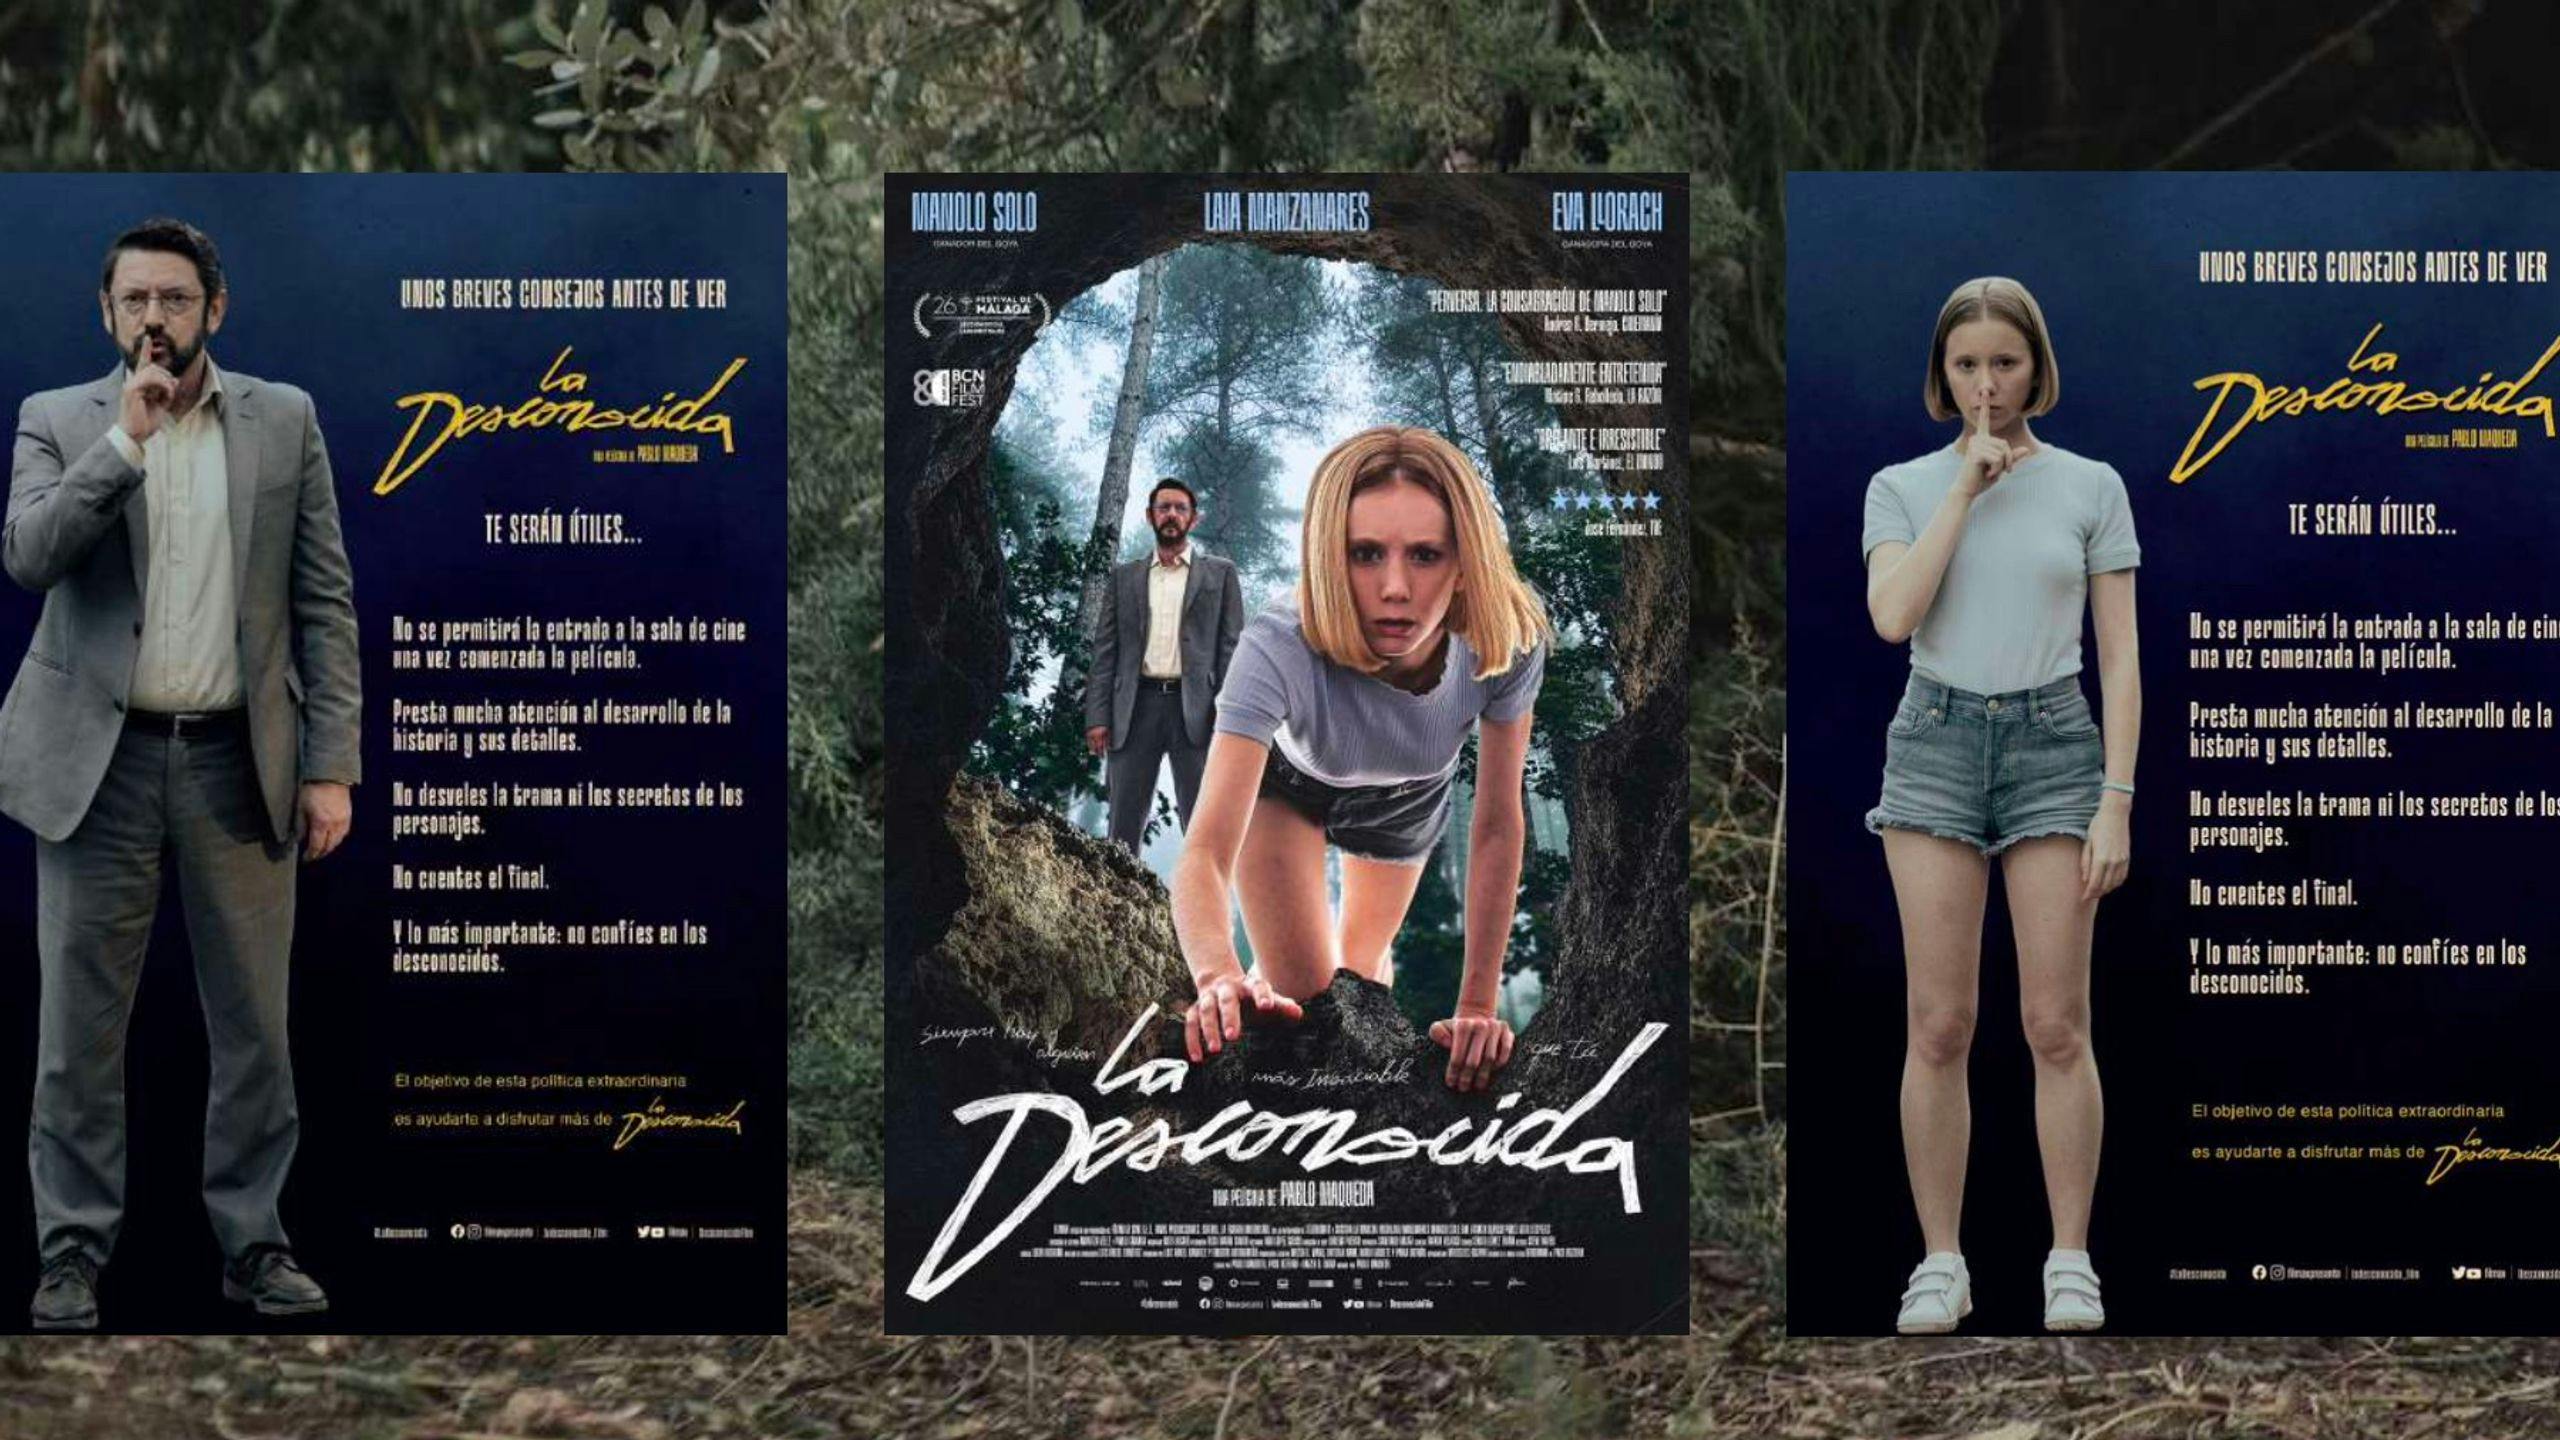 Algunos de los posters de 'La desconocida' que invitan a mantener sus secretos